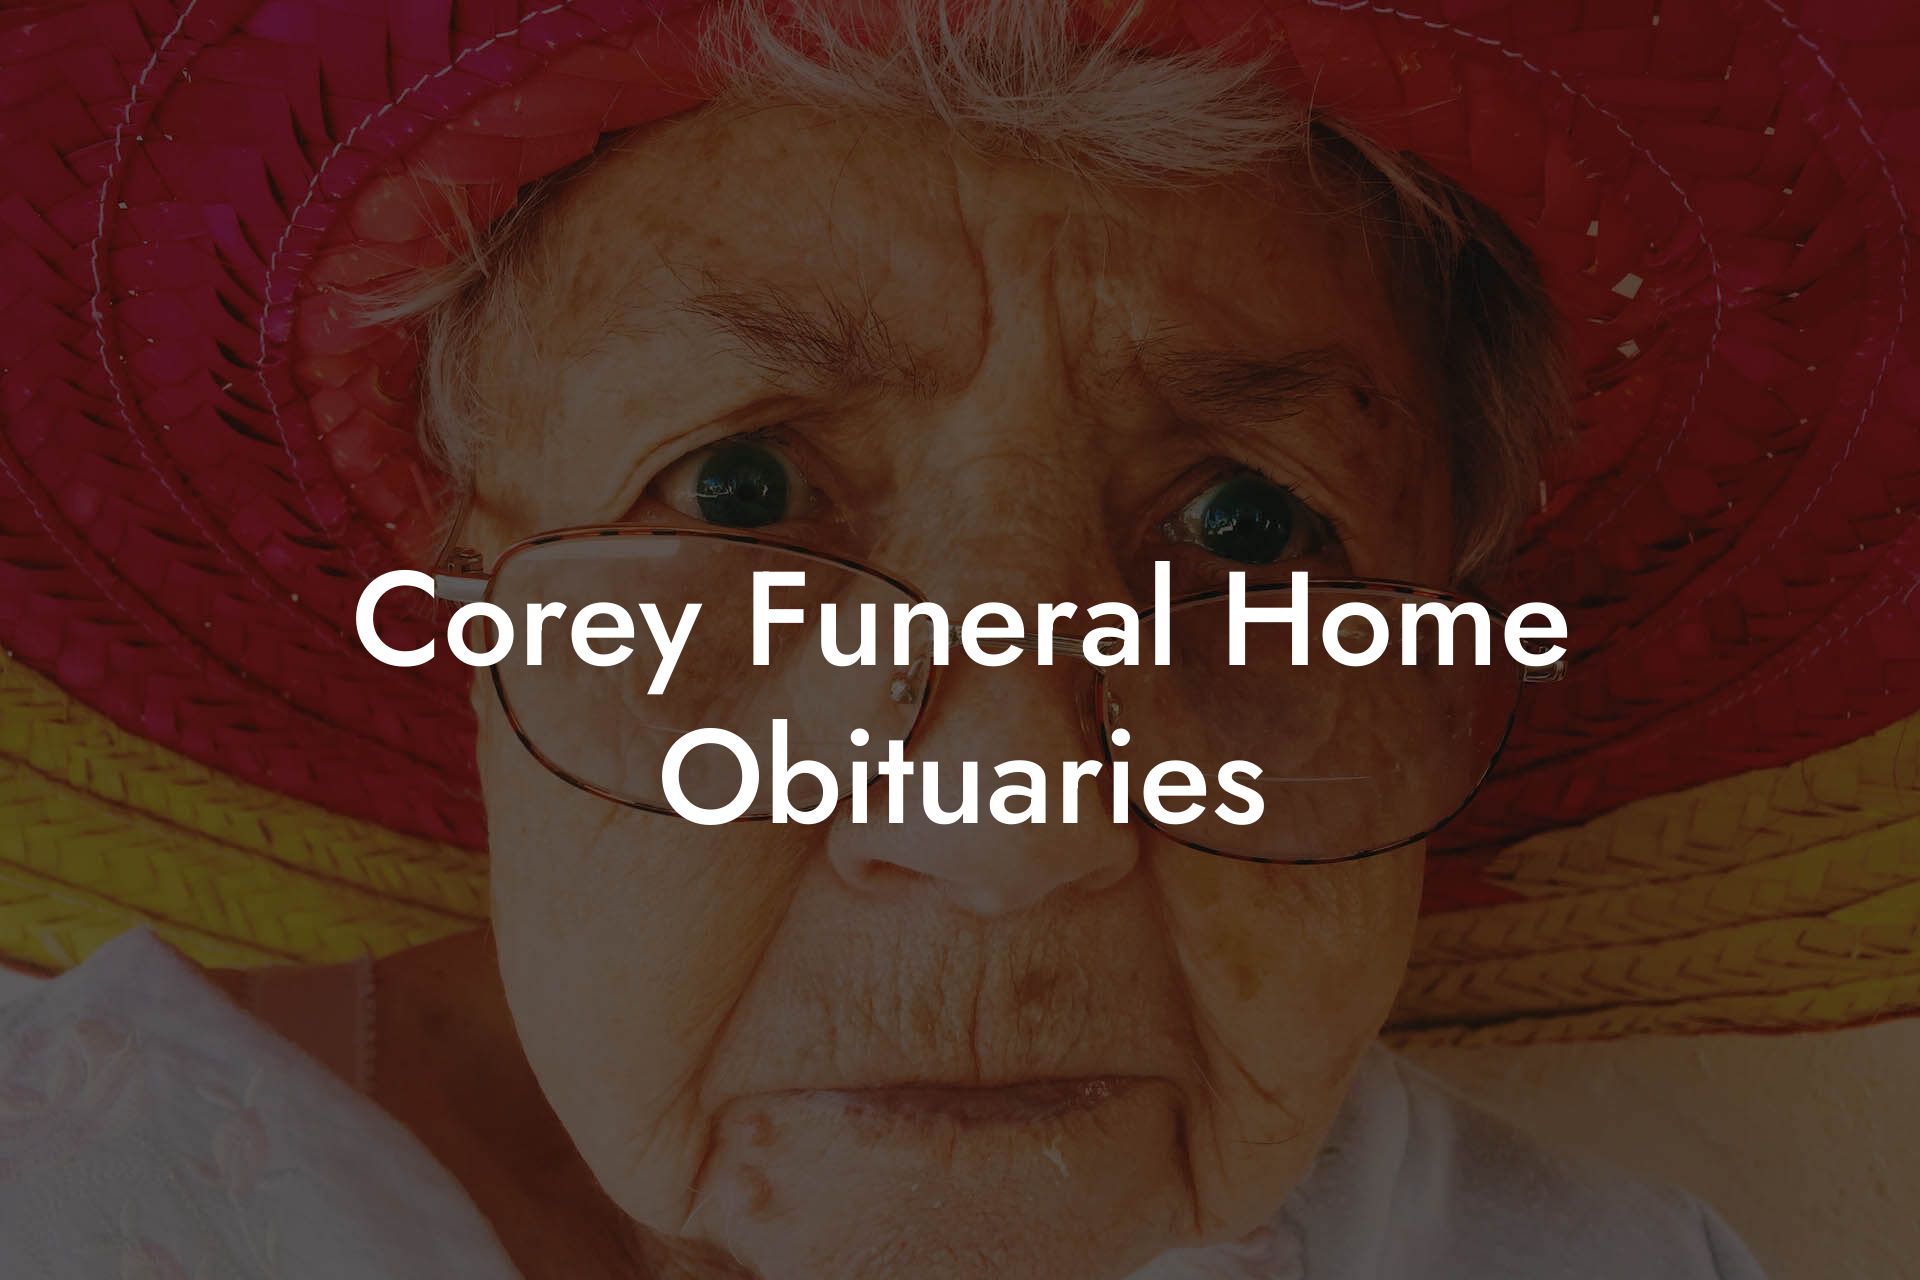 Corey Funeral Home Obituaries